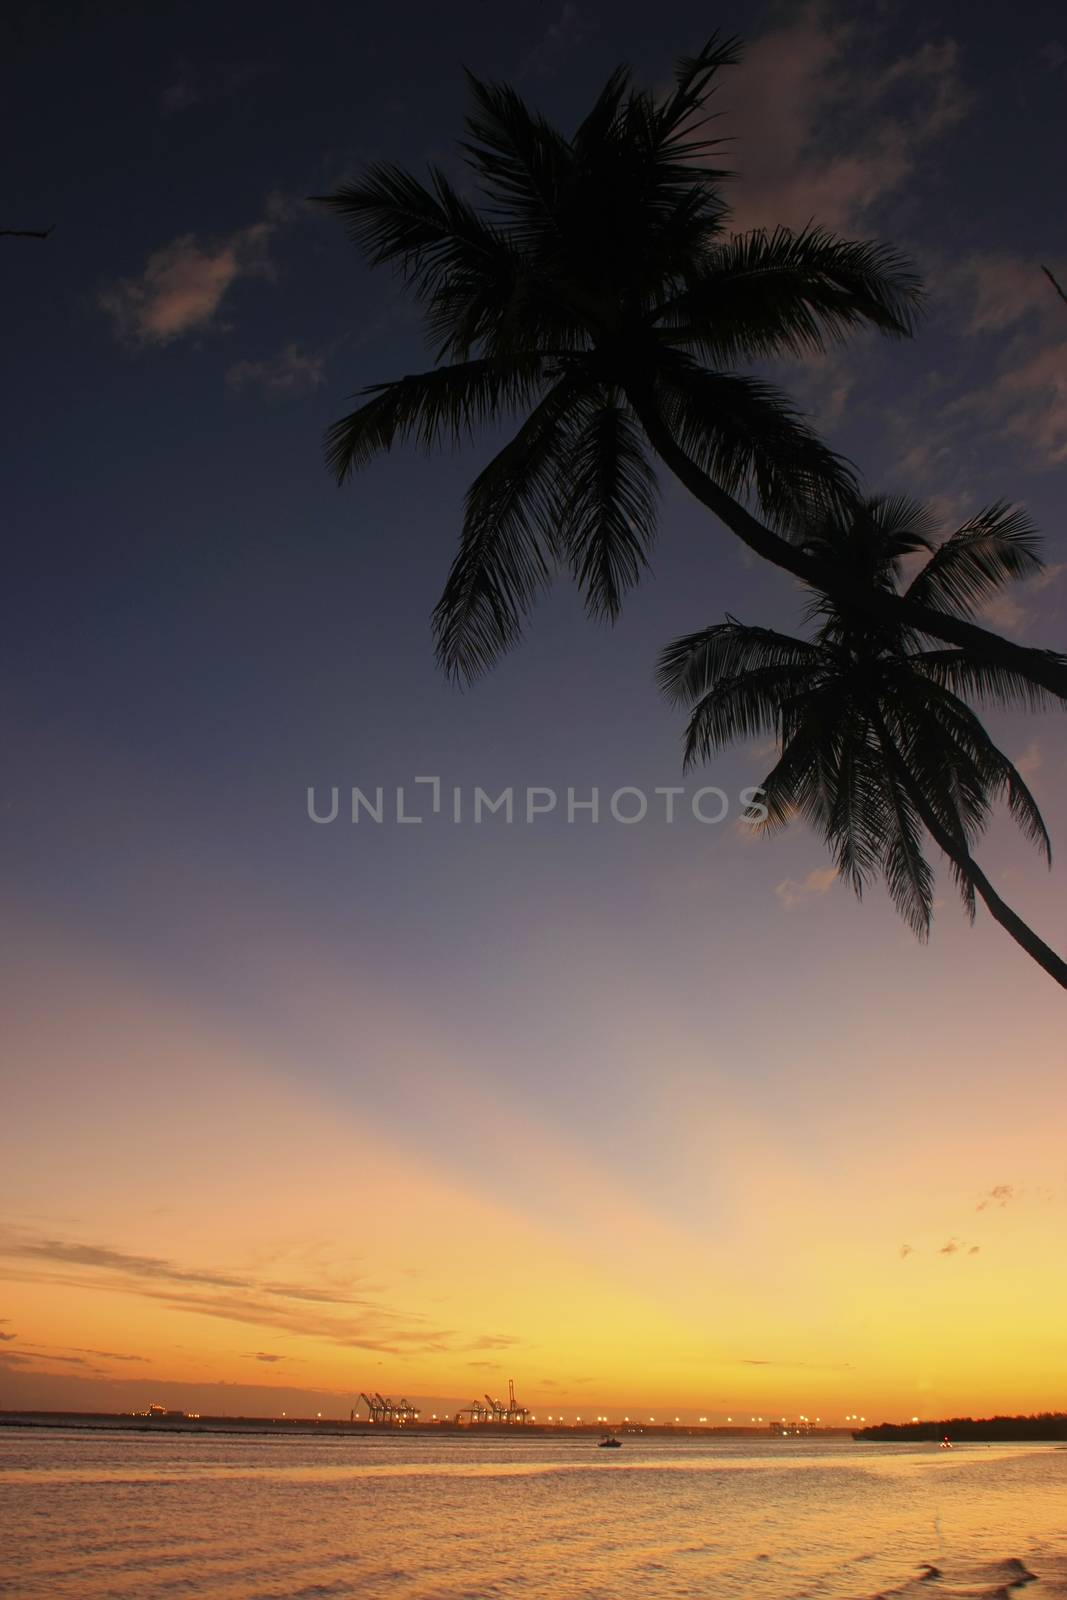 Boca Chica beach at sunset by donya_nedomam